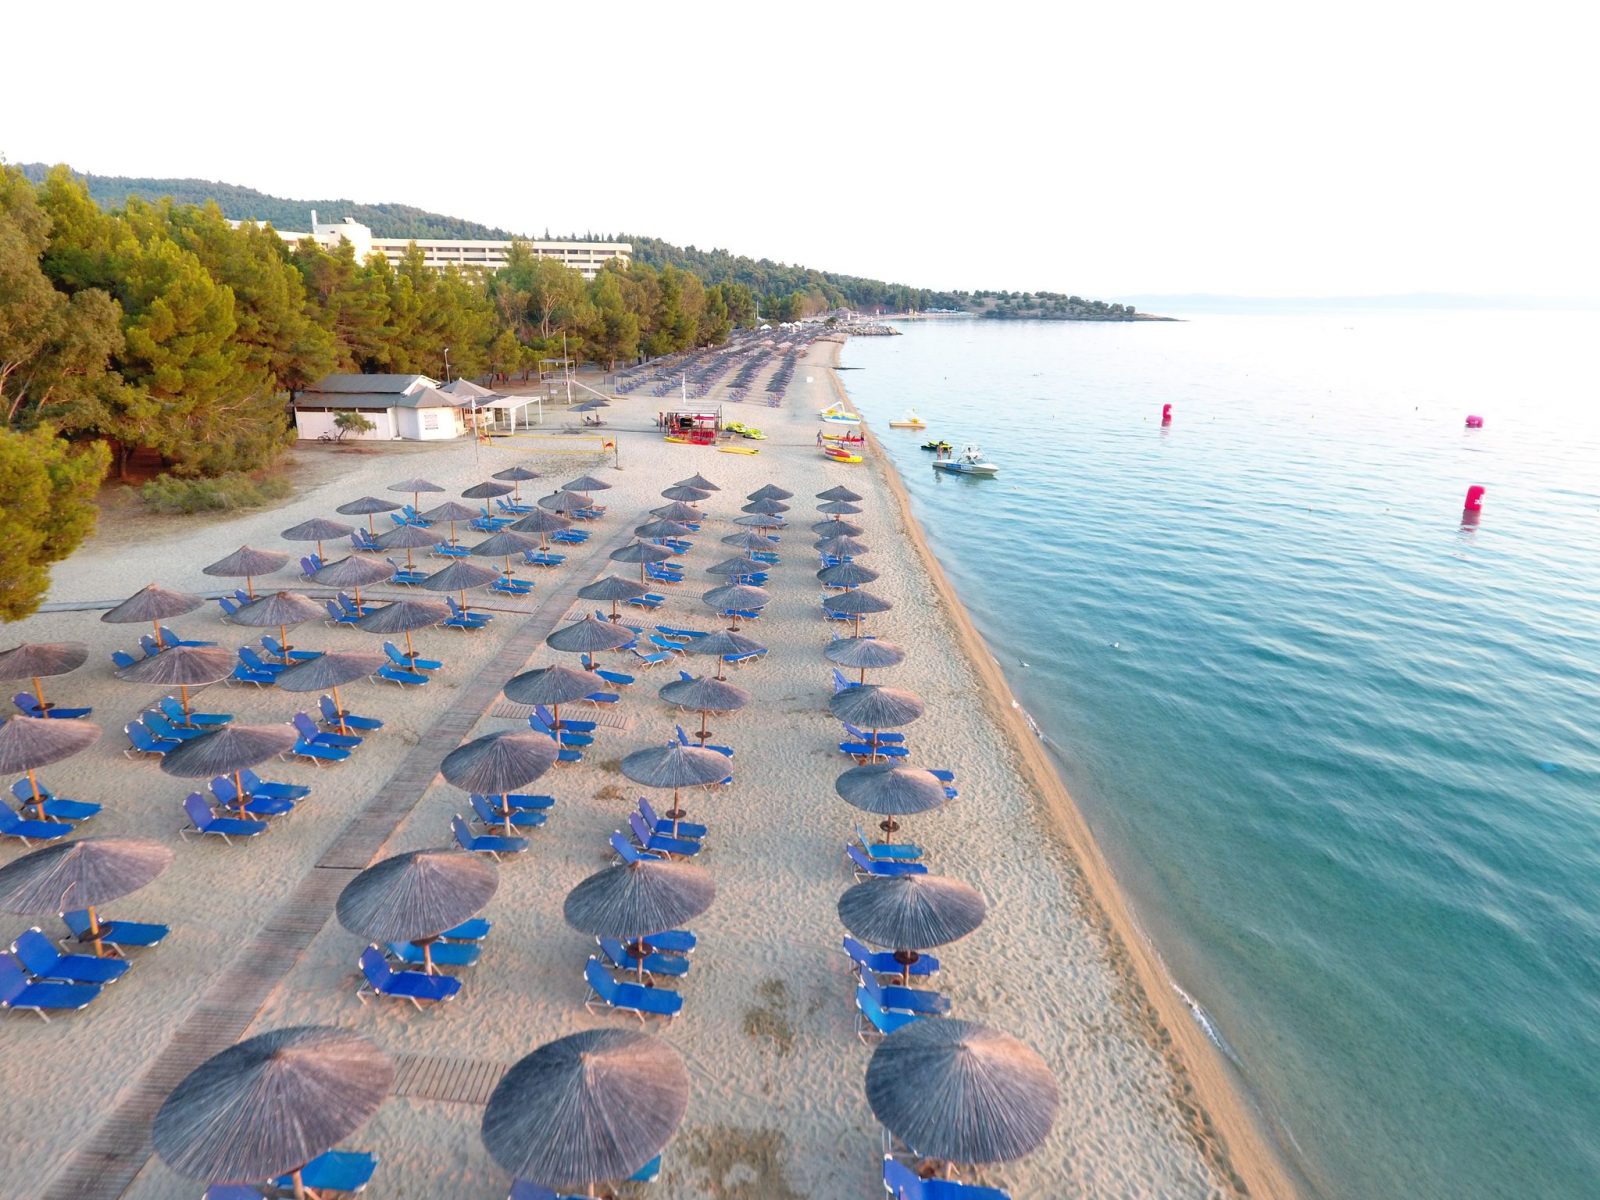 Grcka hoteli leto, Halkidiki, Neos Marmaras, Porto Carras, plaža